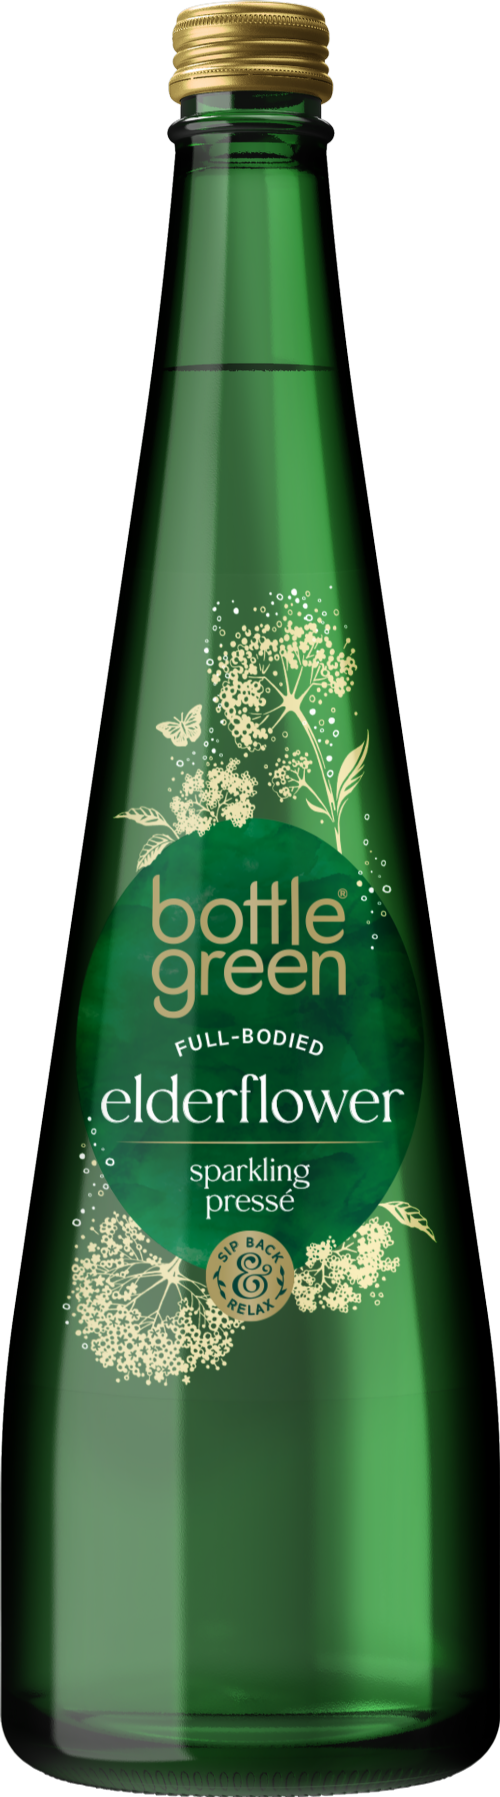 BOTTLEGREEN Full-Bodied Elderflower Sparkling Presse 750ml